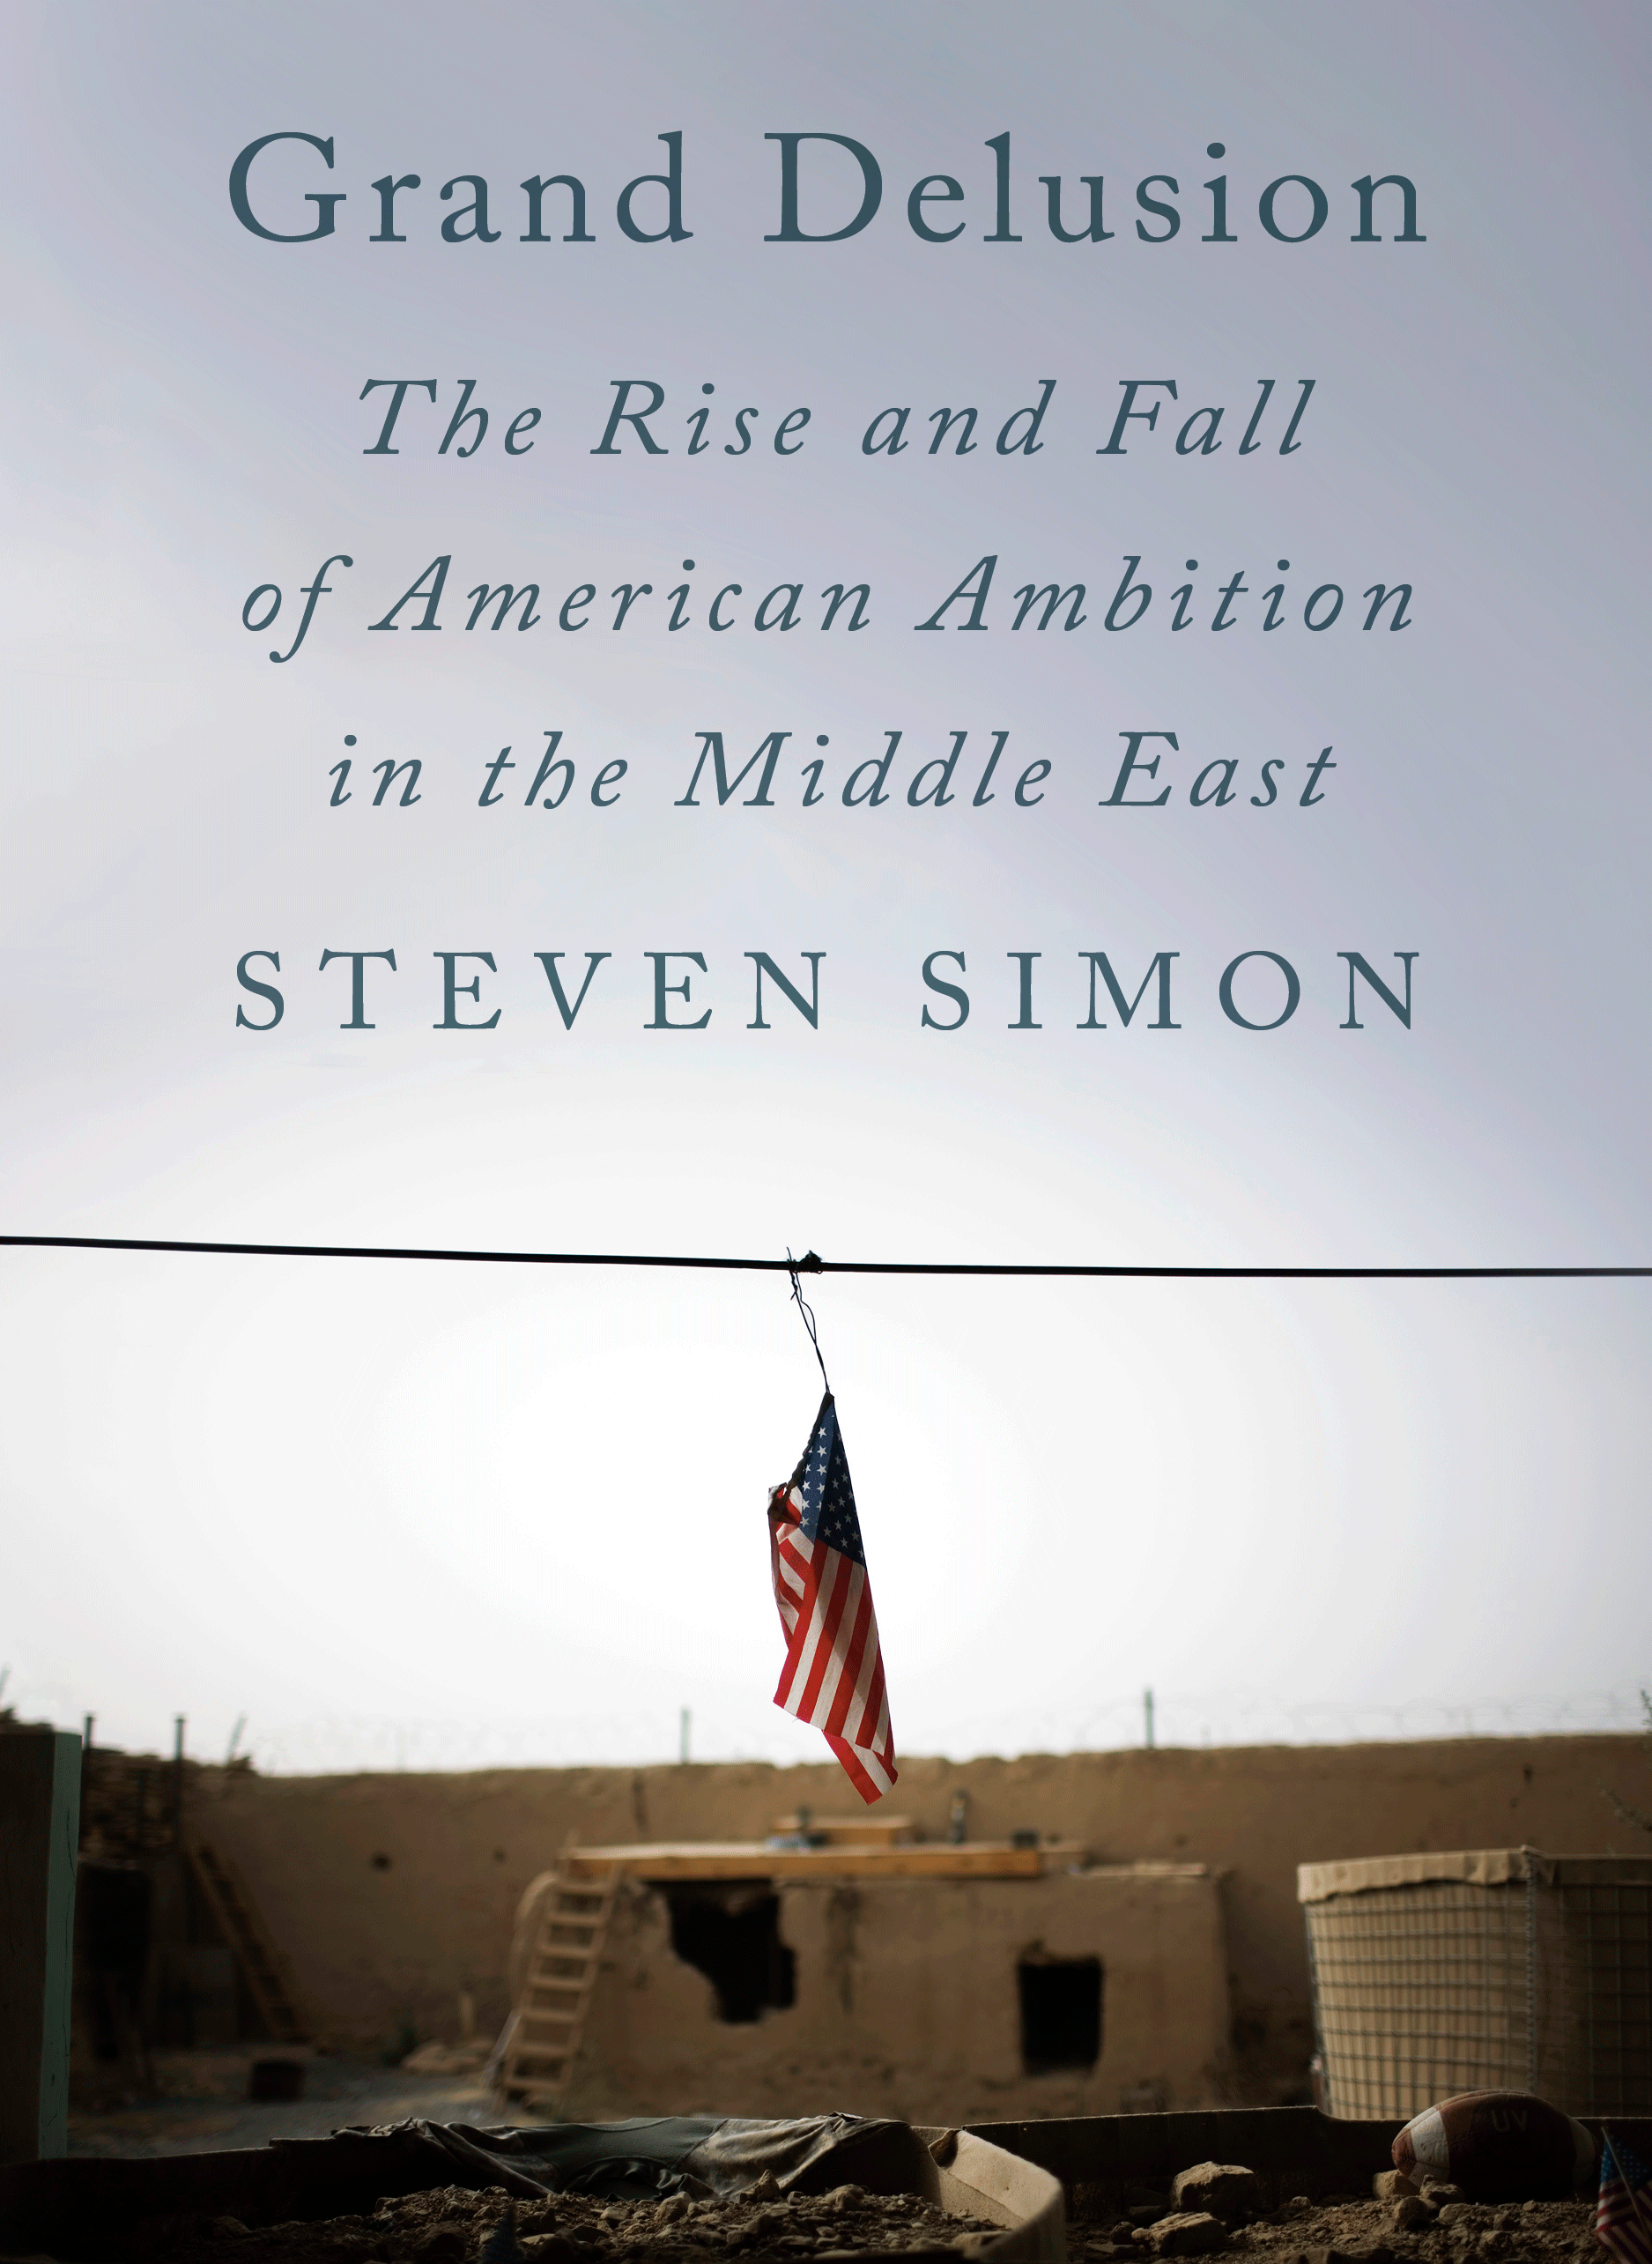 Steve Simon's book Grand Delusion